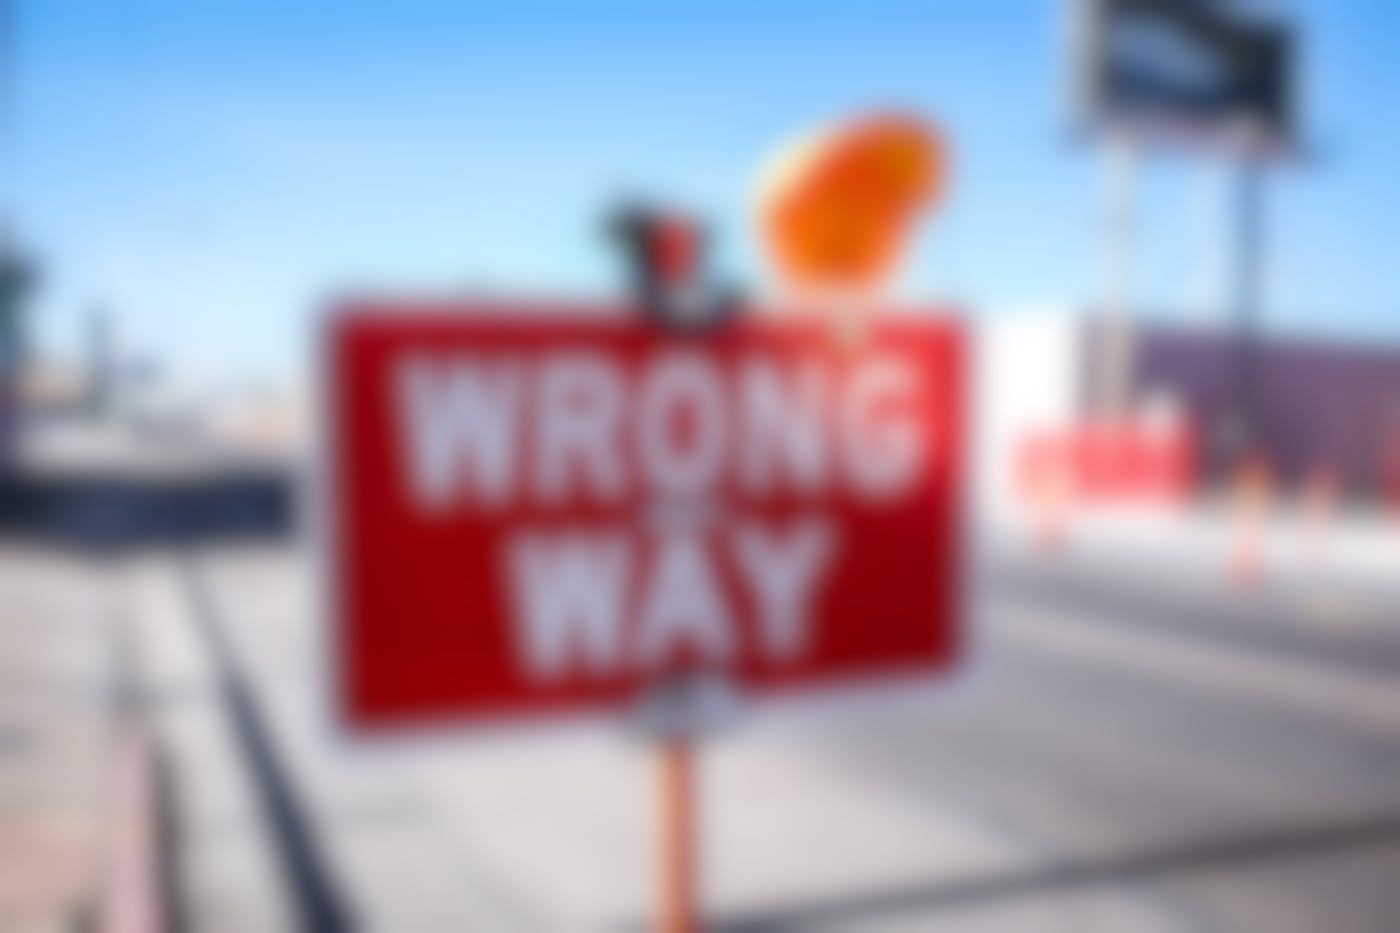 A wrong way sign